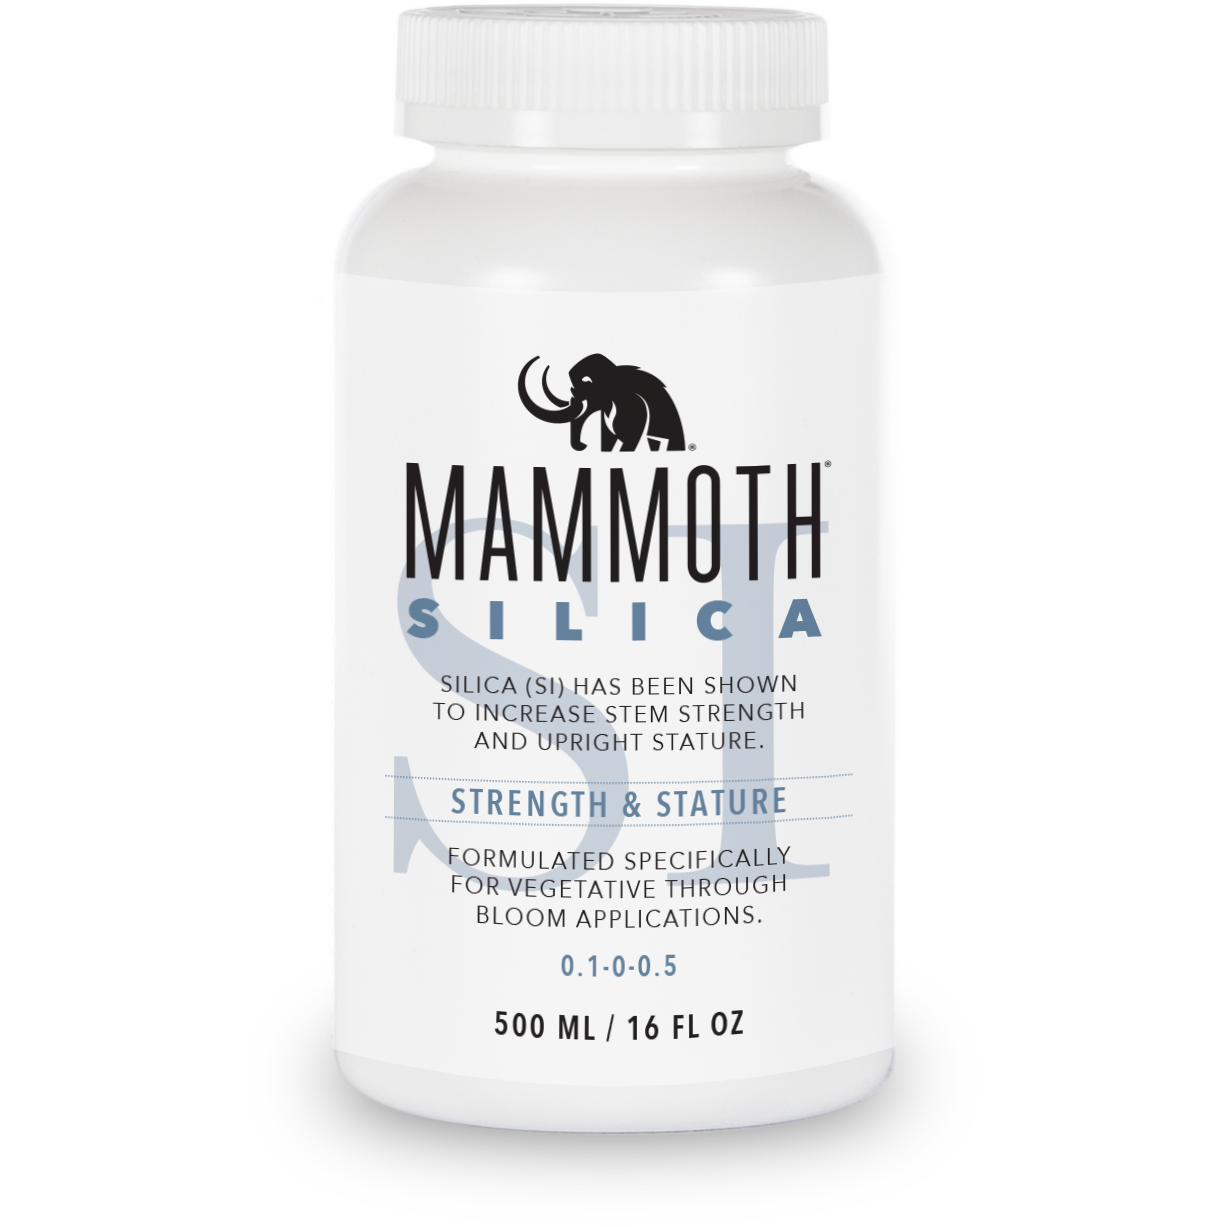 Mammoth Silica GrowItNaturally.com